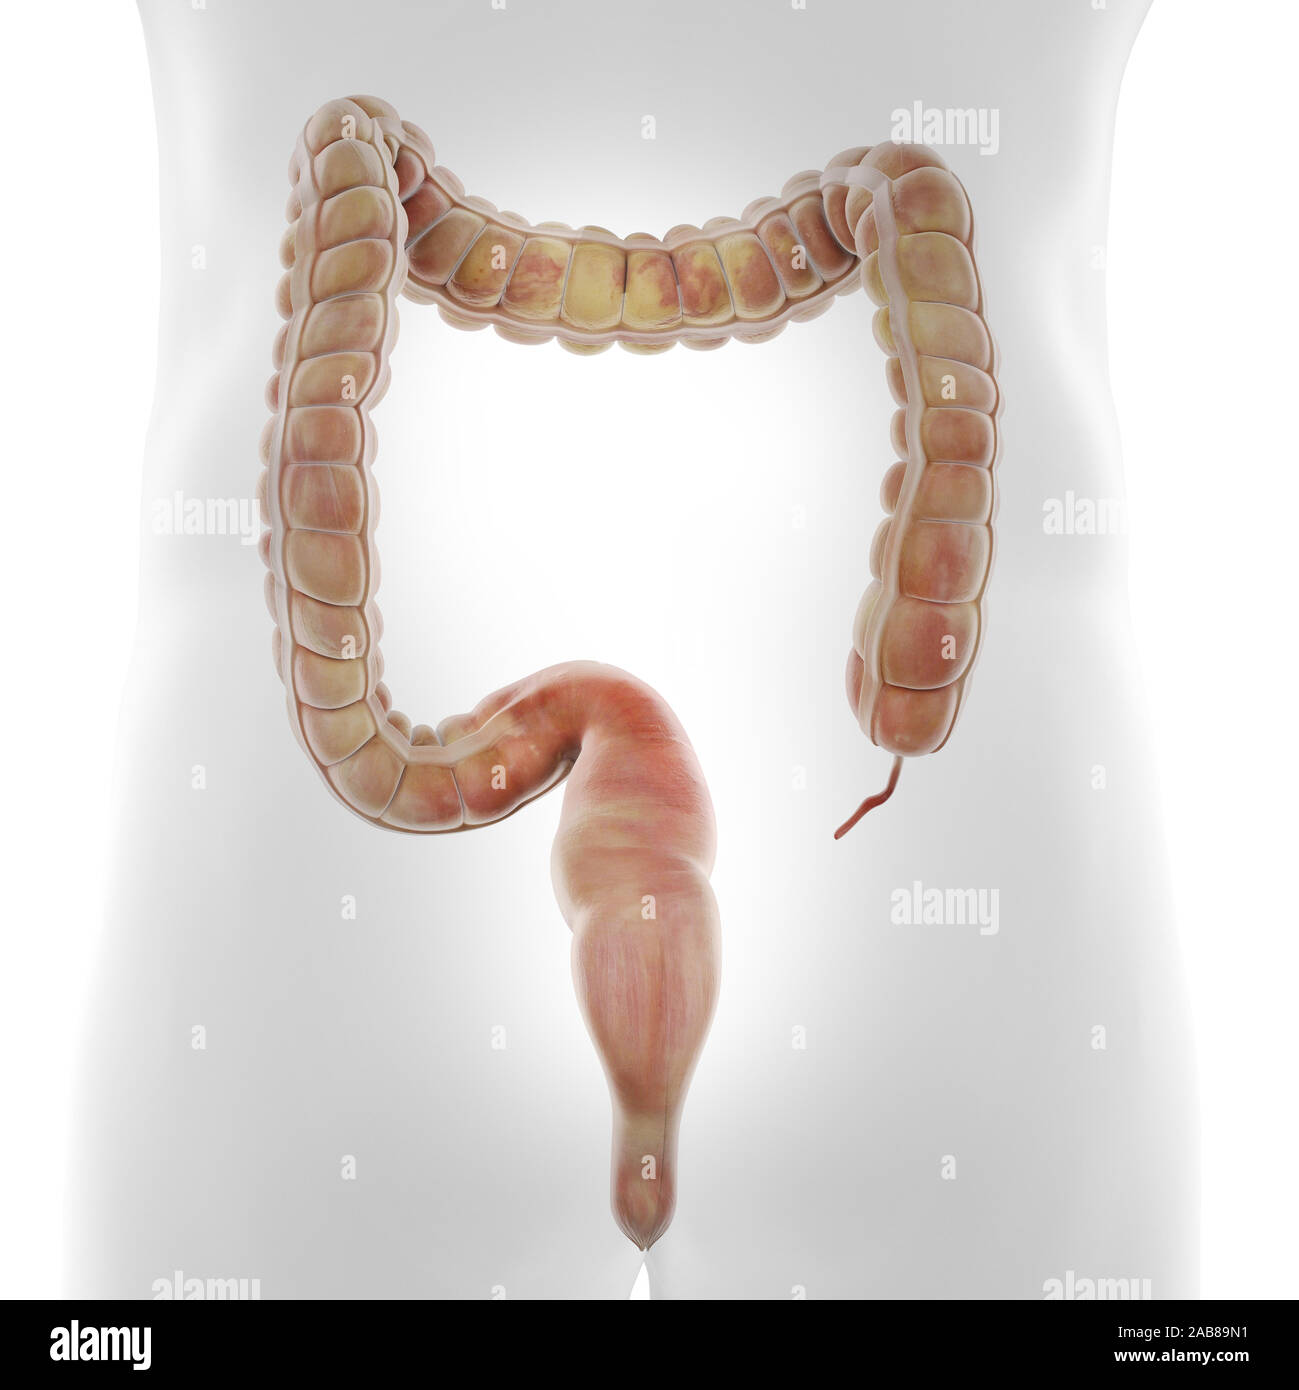 3D Rendering accurato dal punto di vista medico illustrazione del colon umano Foto Stock